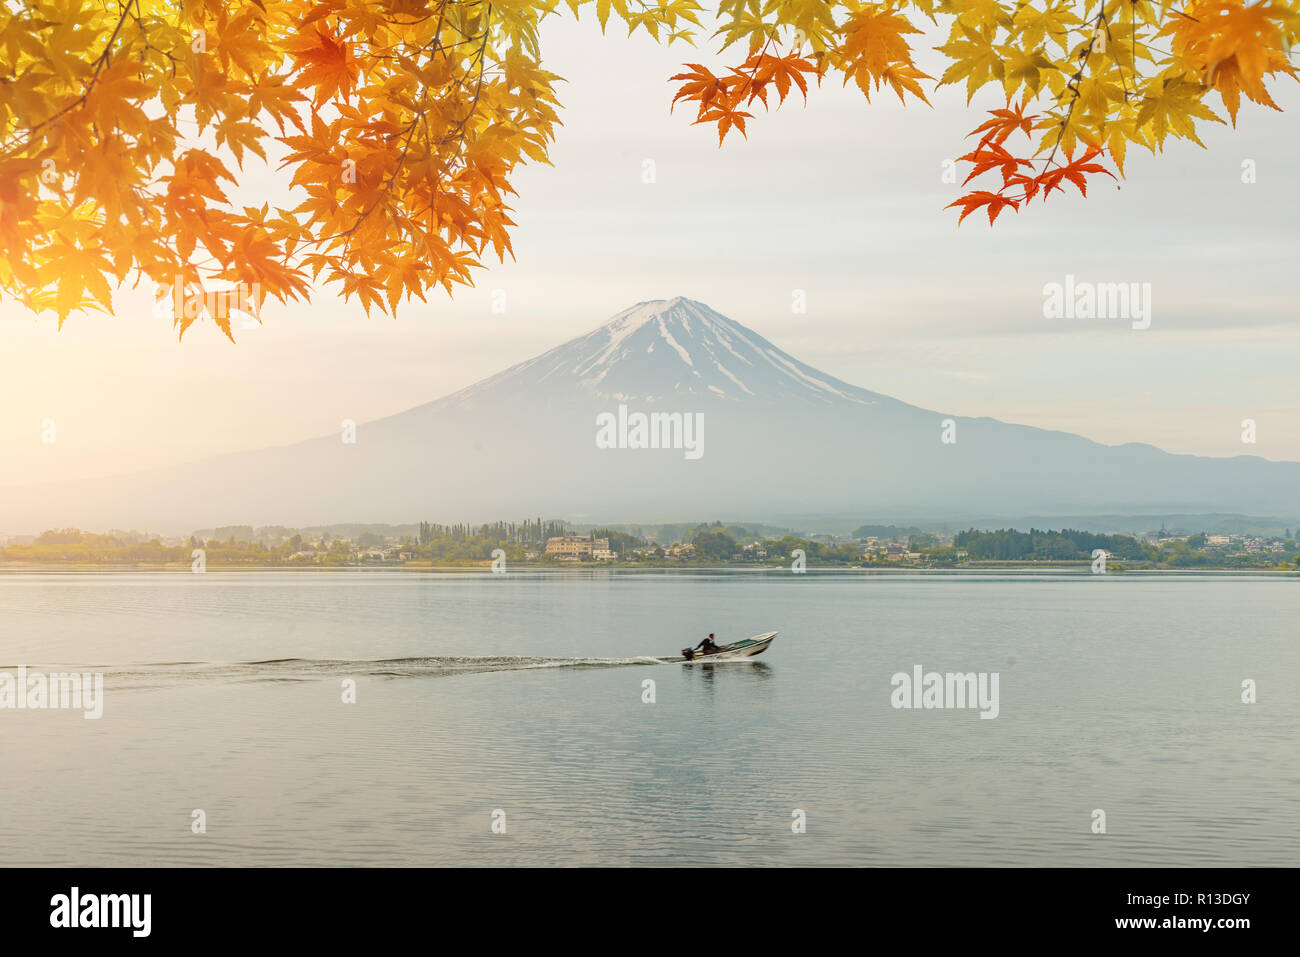 Herbst-Saison und Berg Fuji morgens mit roten Blätter Ahorn an Kawaguchi-See in Japan. Herbstsaison in Japan. Stockfoto